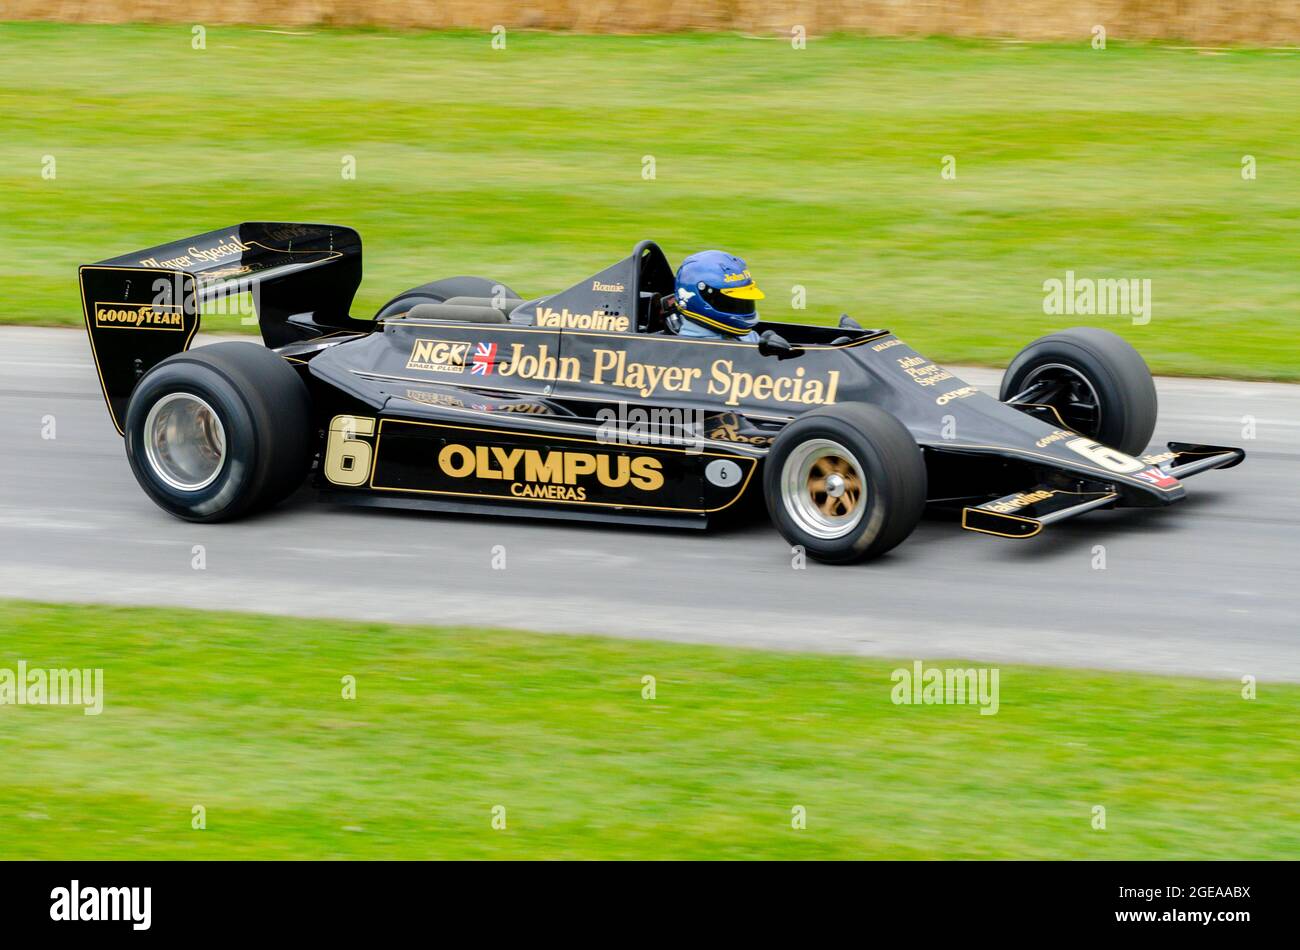 Lotus 79 historique Formule 1, voiture de course Grand Prix au Goodwood Festival of Speed Motor Racing event 2014, en montant sur la piste d'ascension de la colline Banque D'Images